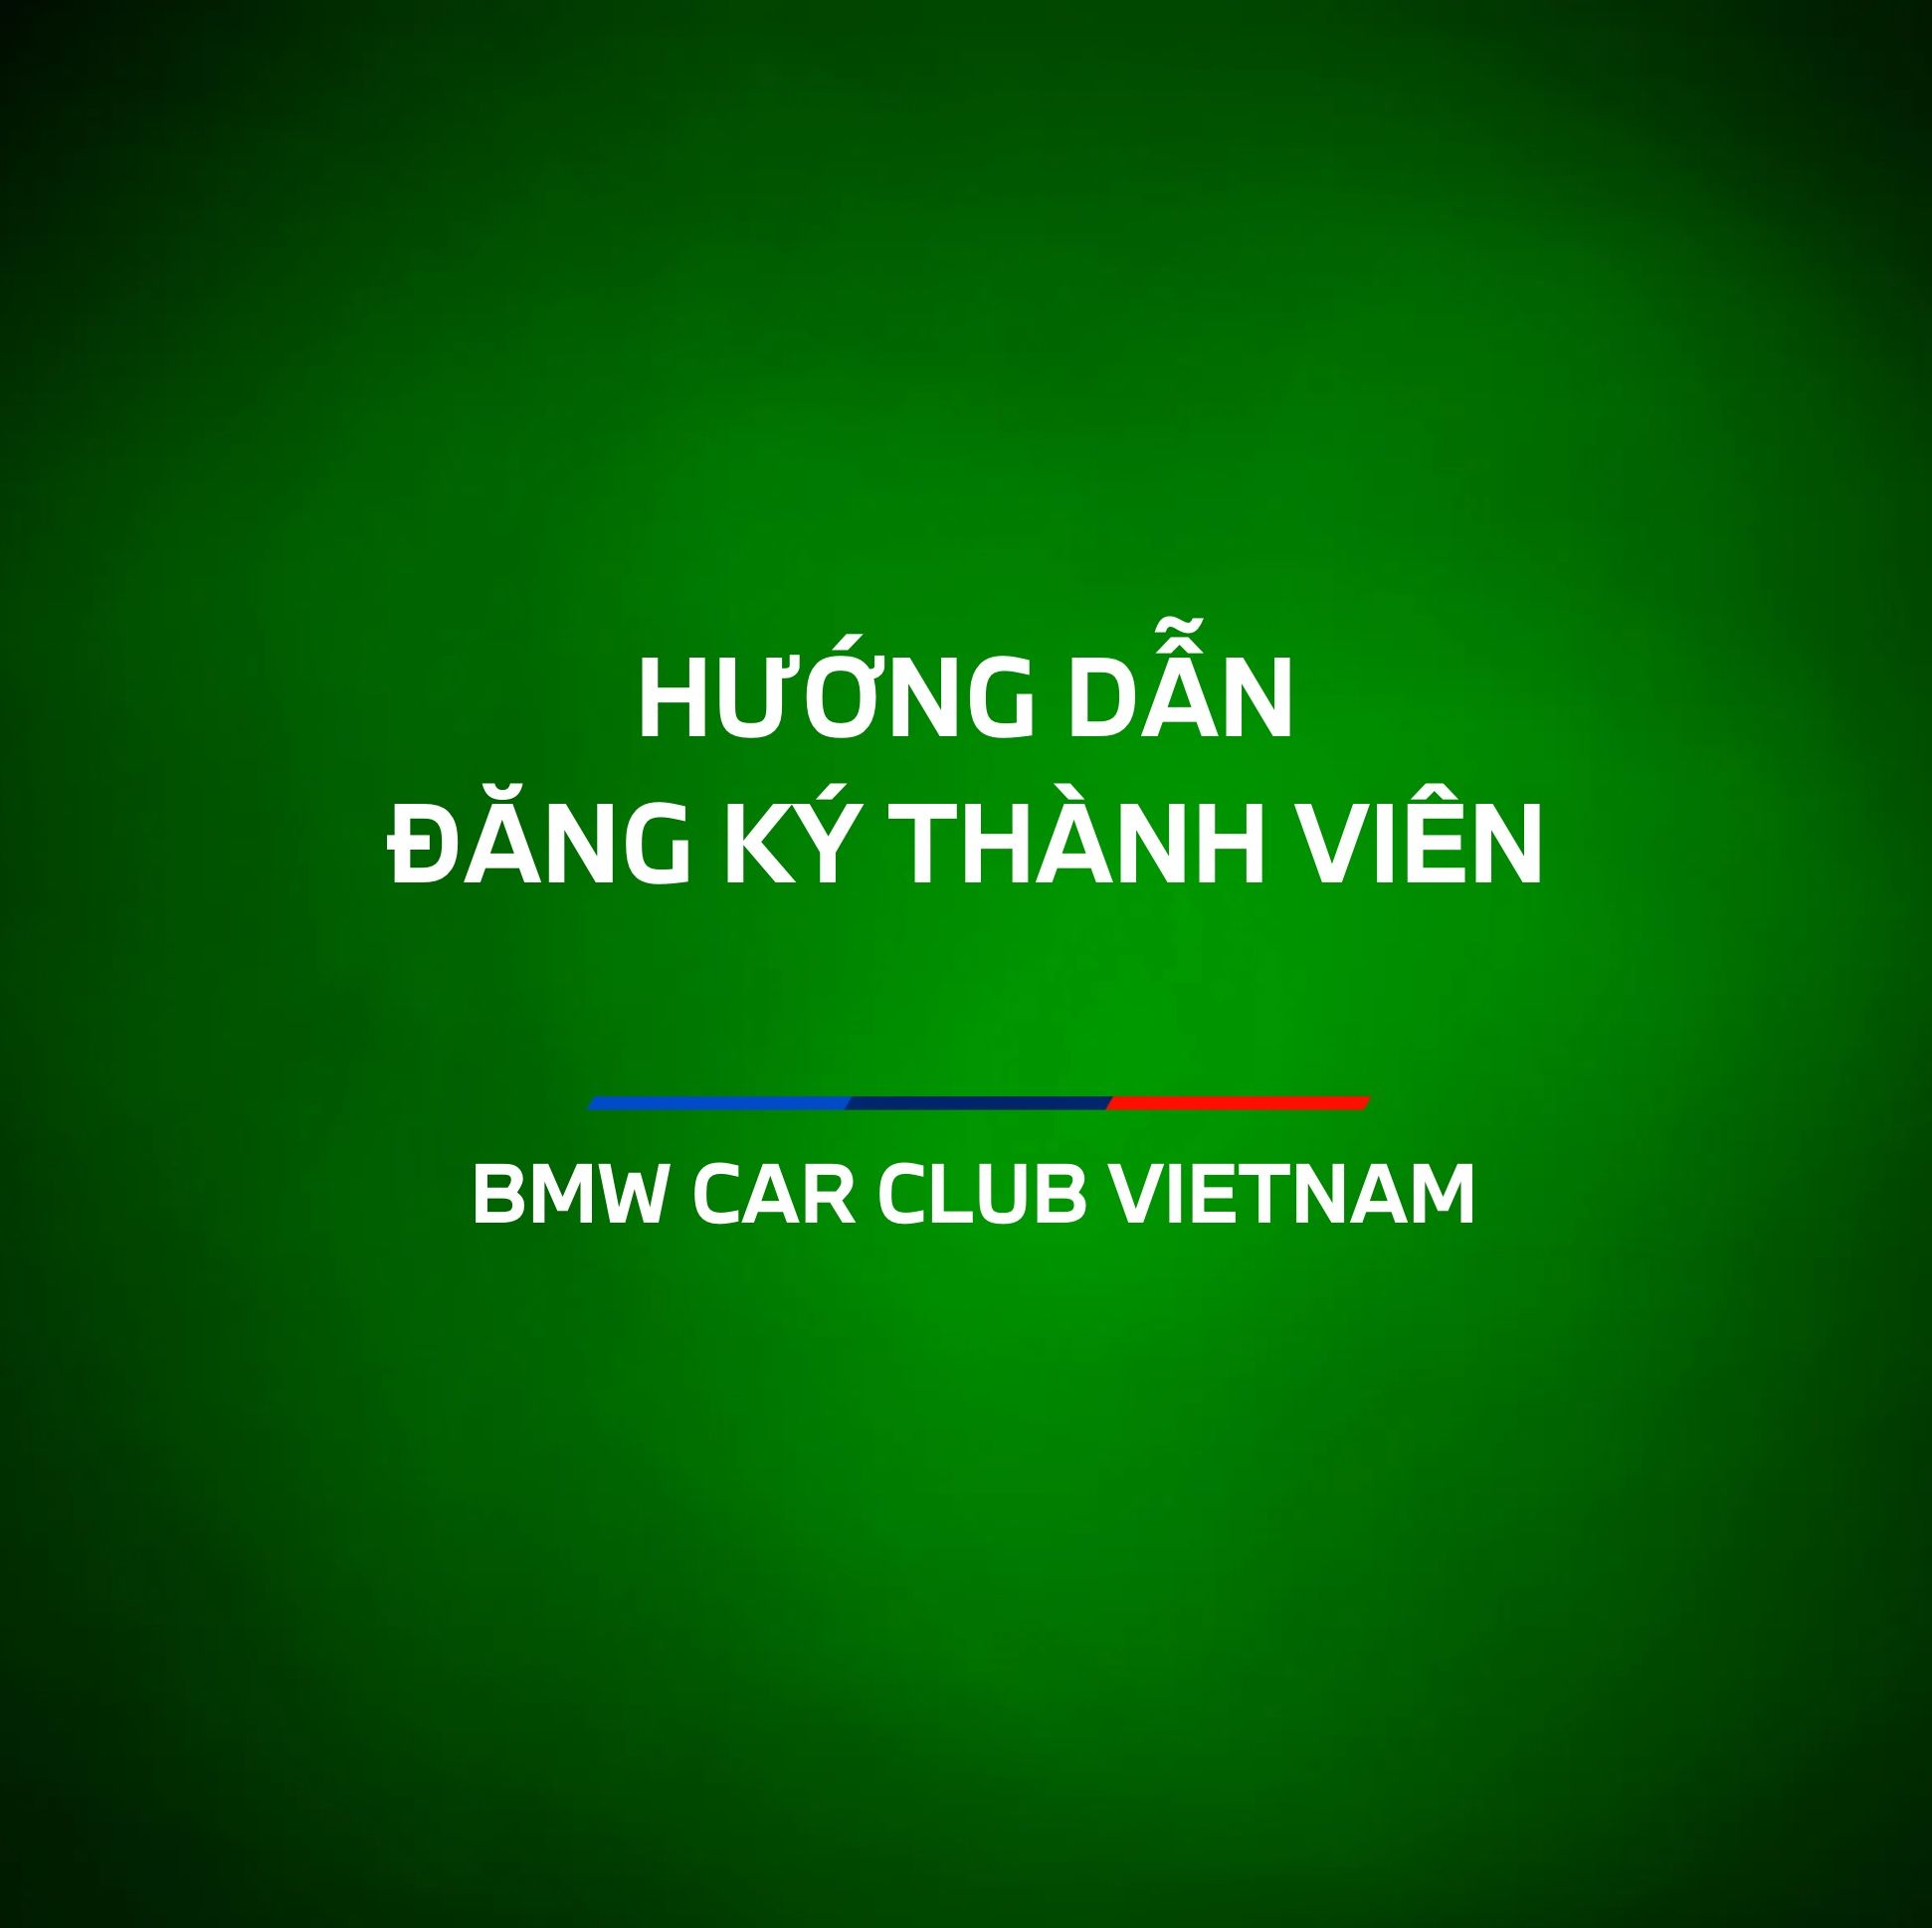 Hướng dẫn đăng kí thành viên của BMW CAR CLUB VIETNAM